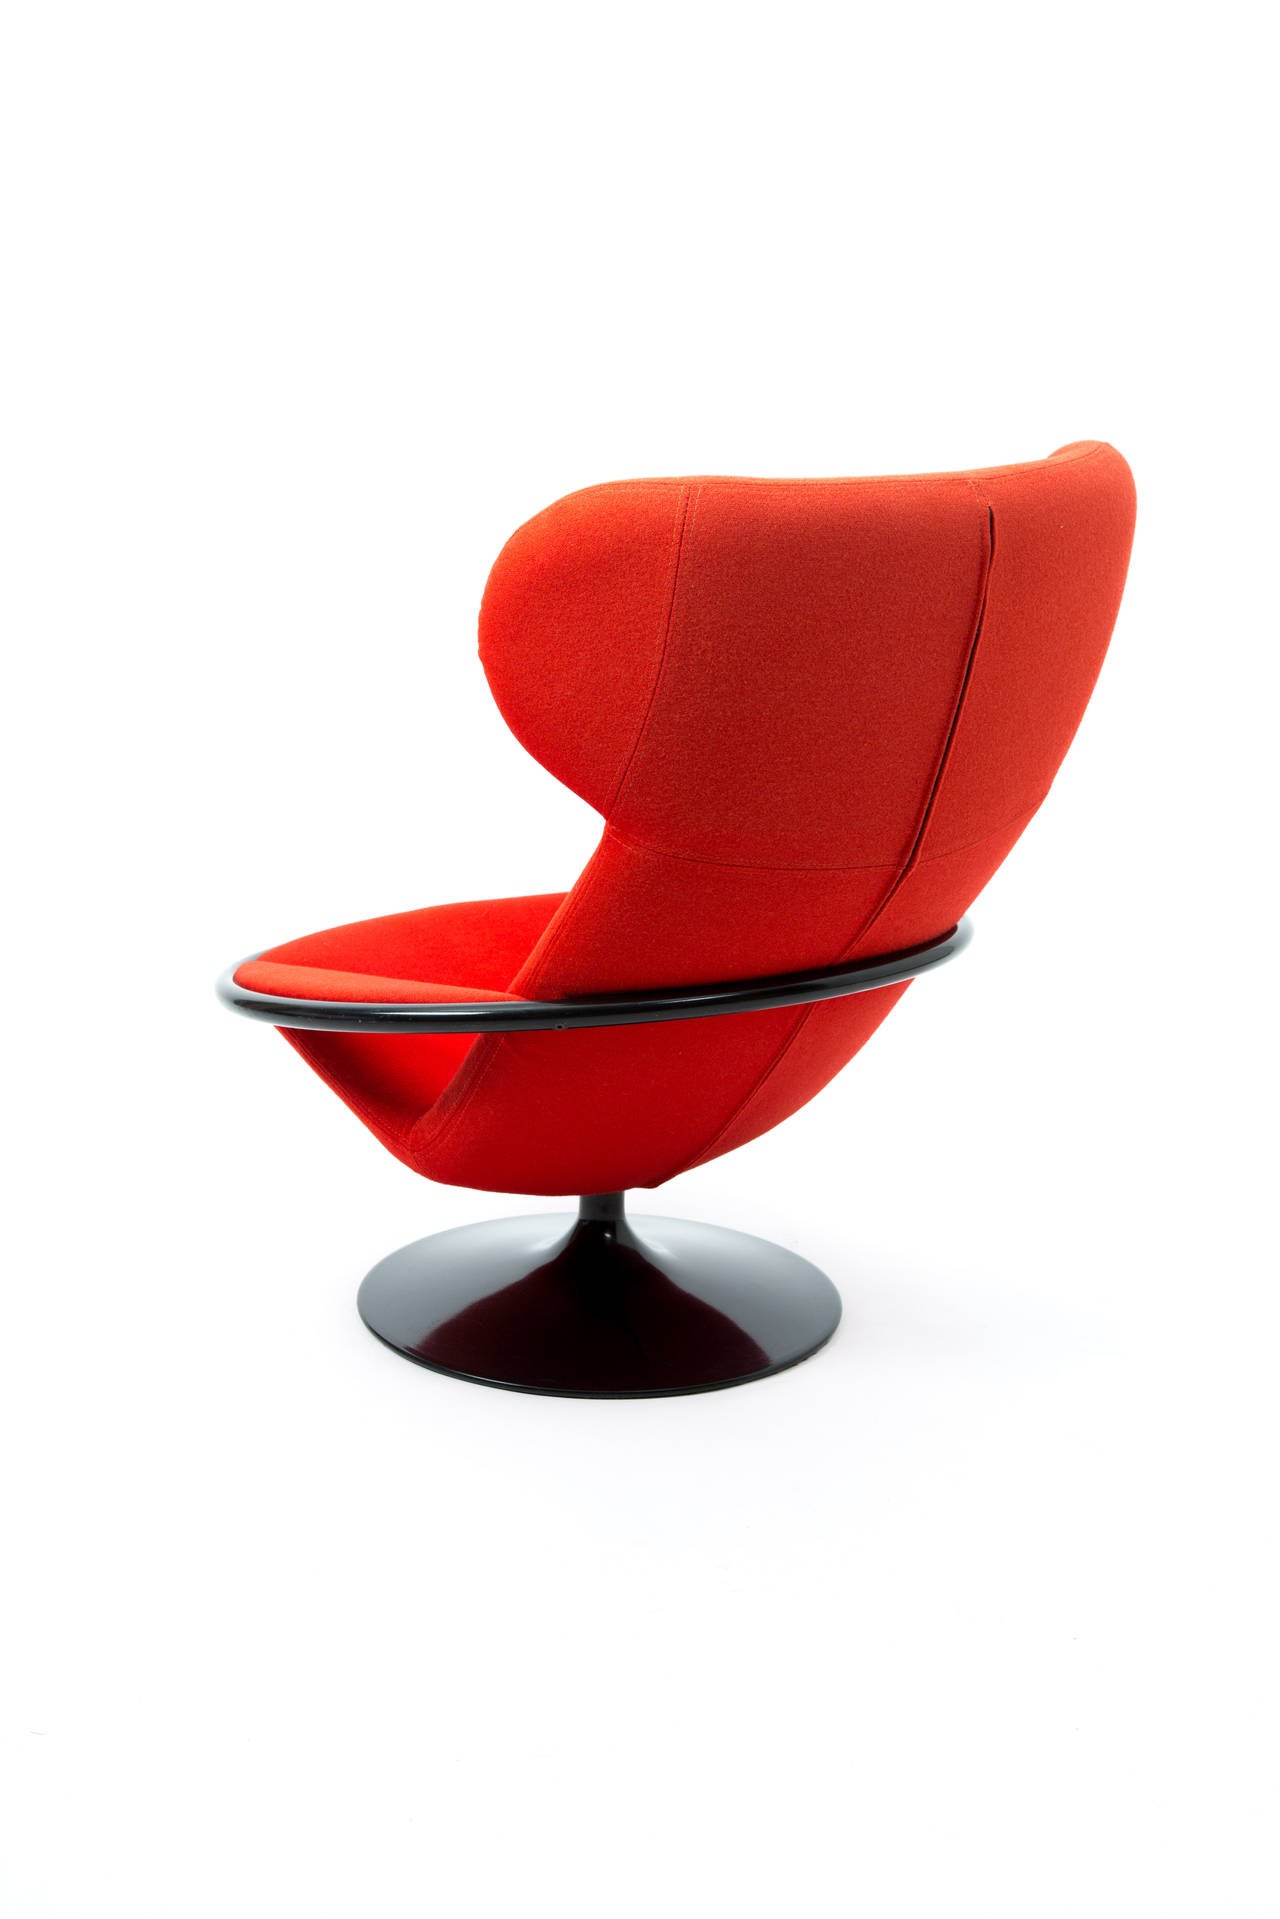 Mid-Century Modern Artifort Dutch Design Geoffrey Harcourt Lounge Chair